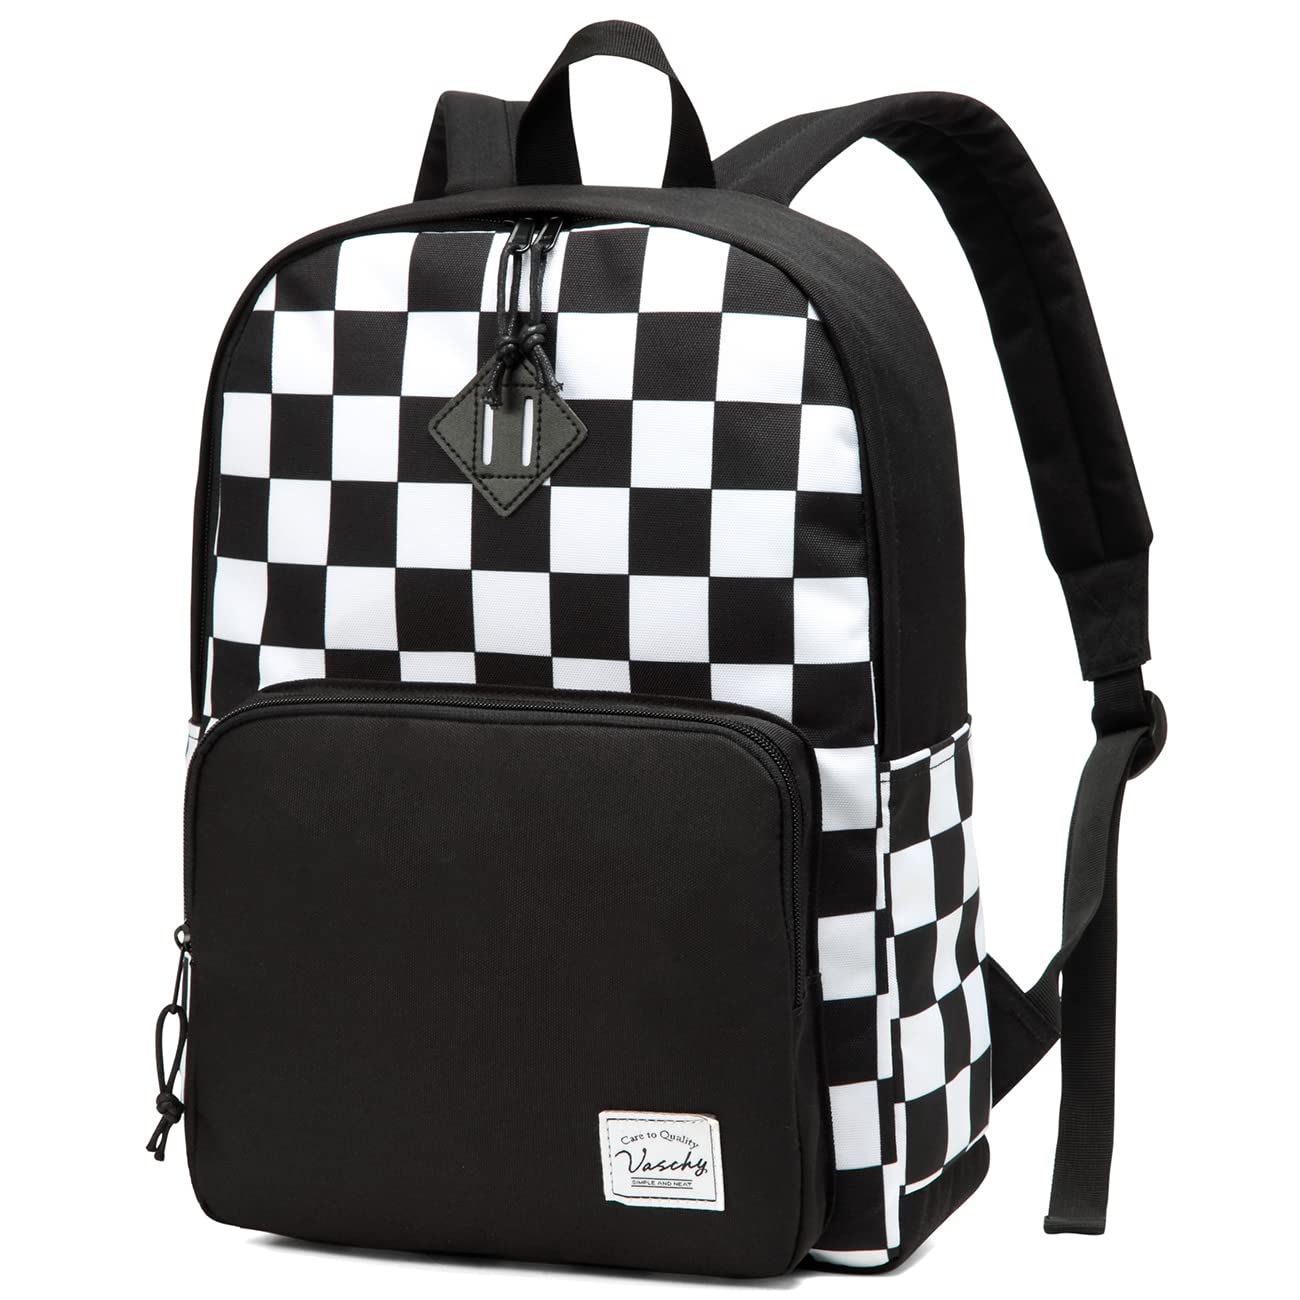 VASCHY School Backpack, Lightweight Travel Backpack for Men Women Schoolbag Bookbag for Kids Teen Boys Girls Black White Plaid